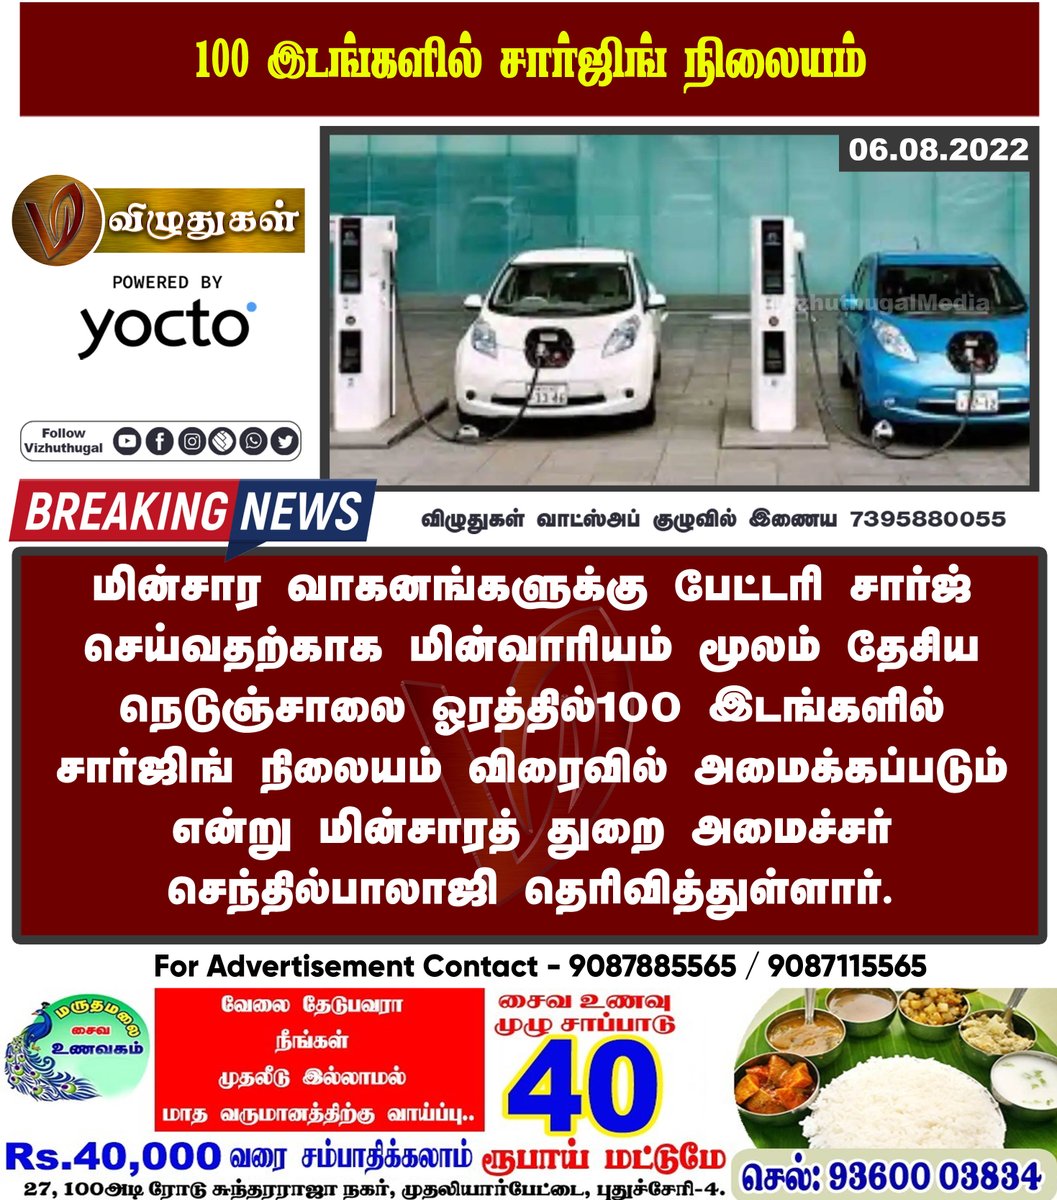 100 இடங்களில் சார்ஜிங் நிலையம்

#tamilnadu #chargingplace #electricity #nationahighway #BreakingNews | #Vizhuthugalmedia | #dailyupdate | #Dailynews | #vizhuthugalnews